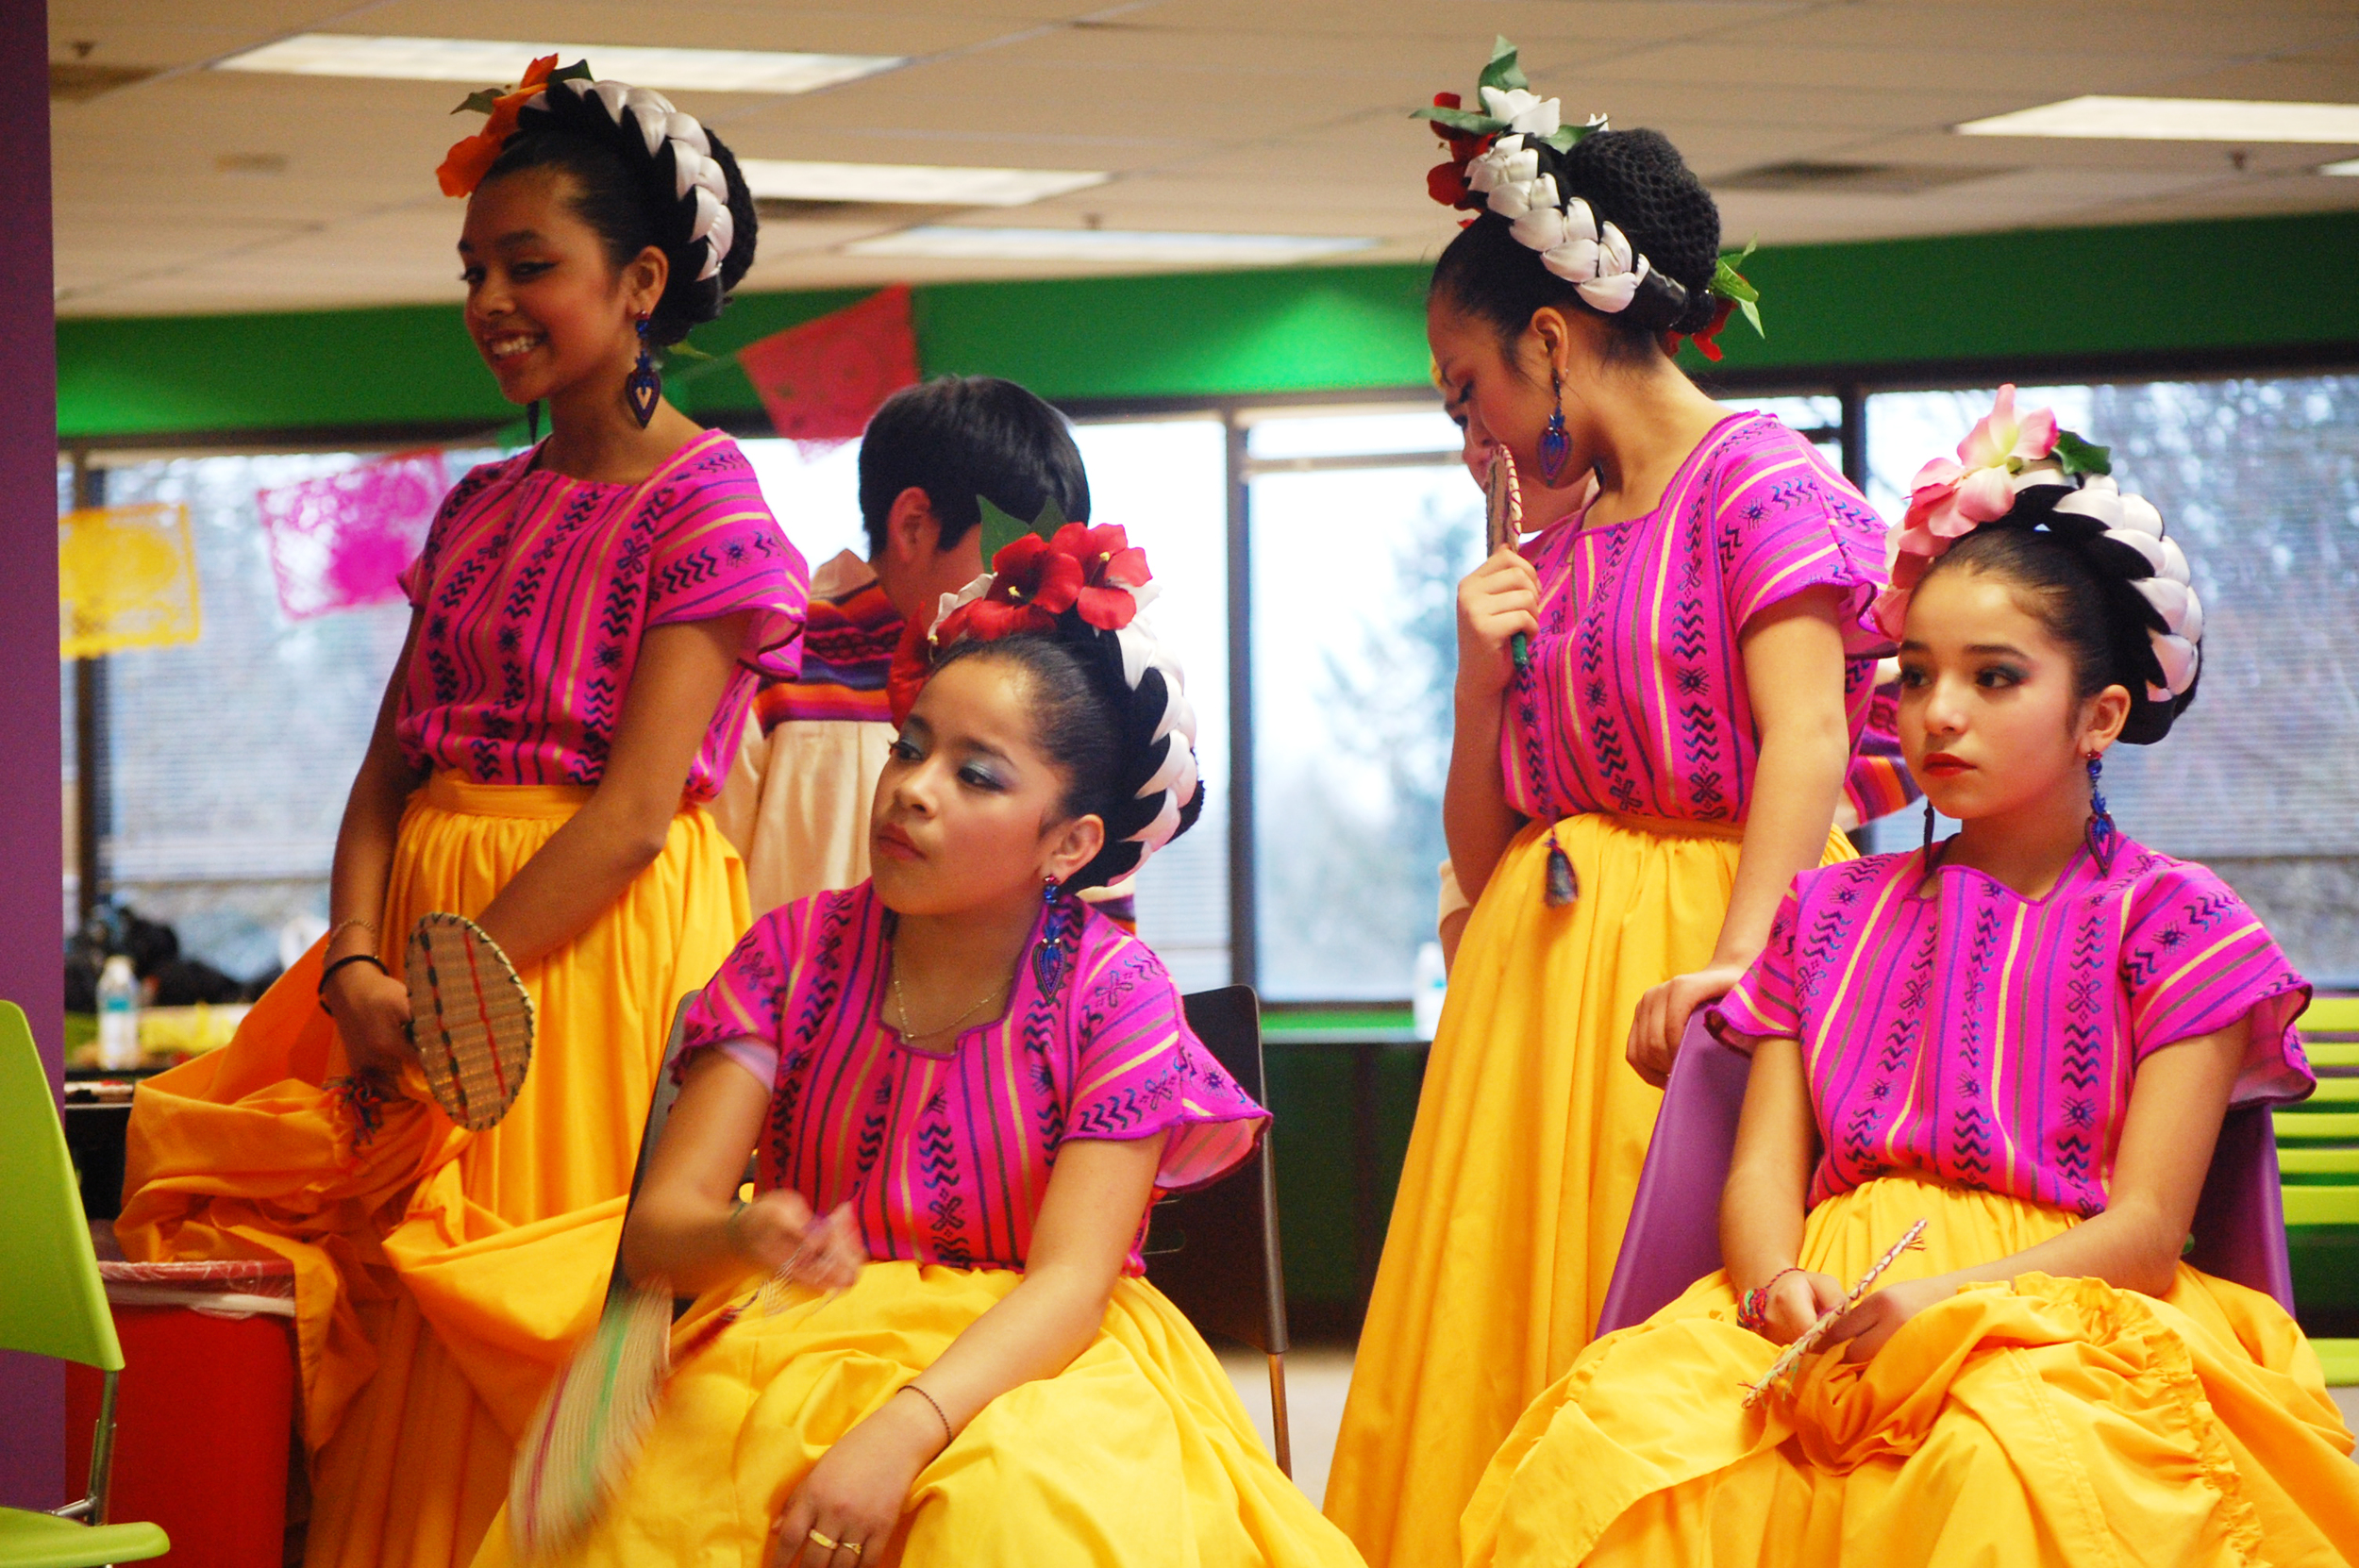 Forest Grove's Mexico en La Piel dance troupe